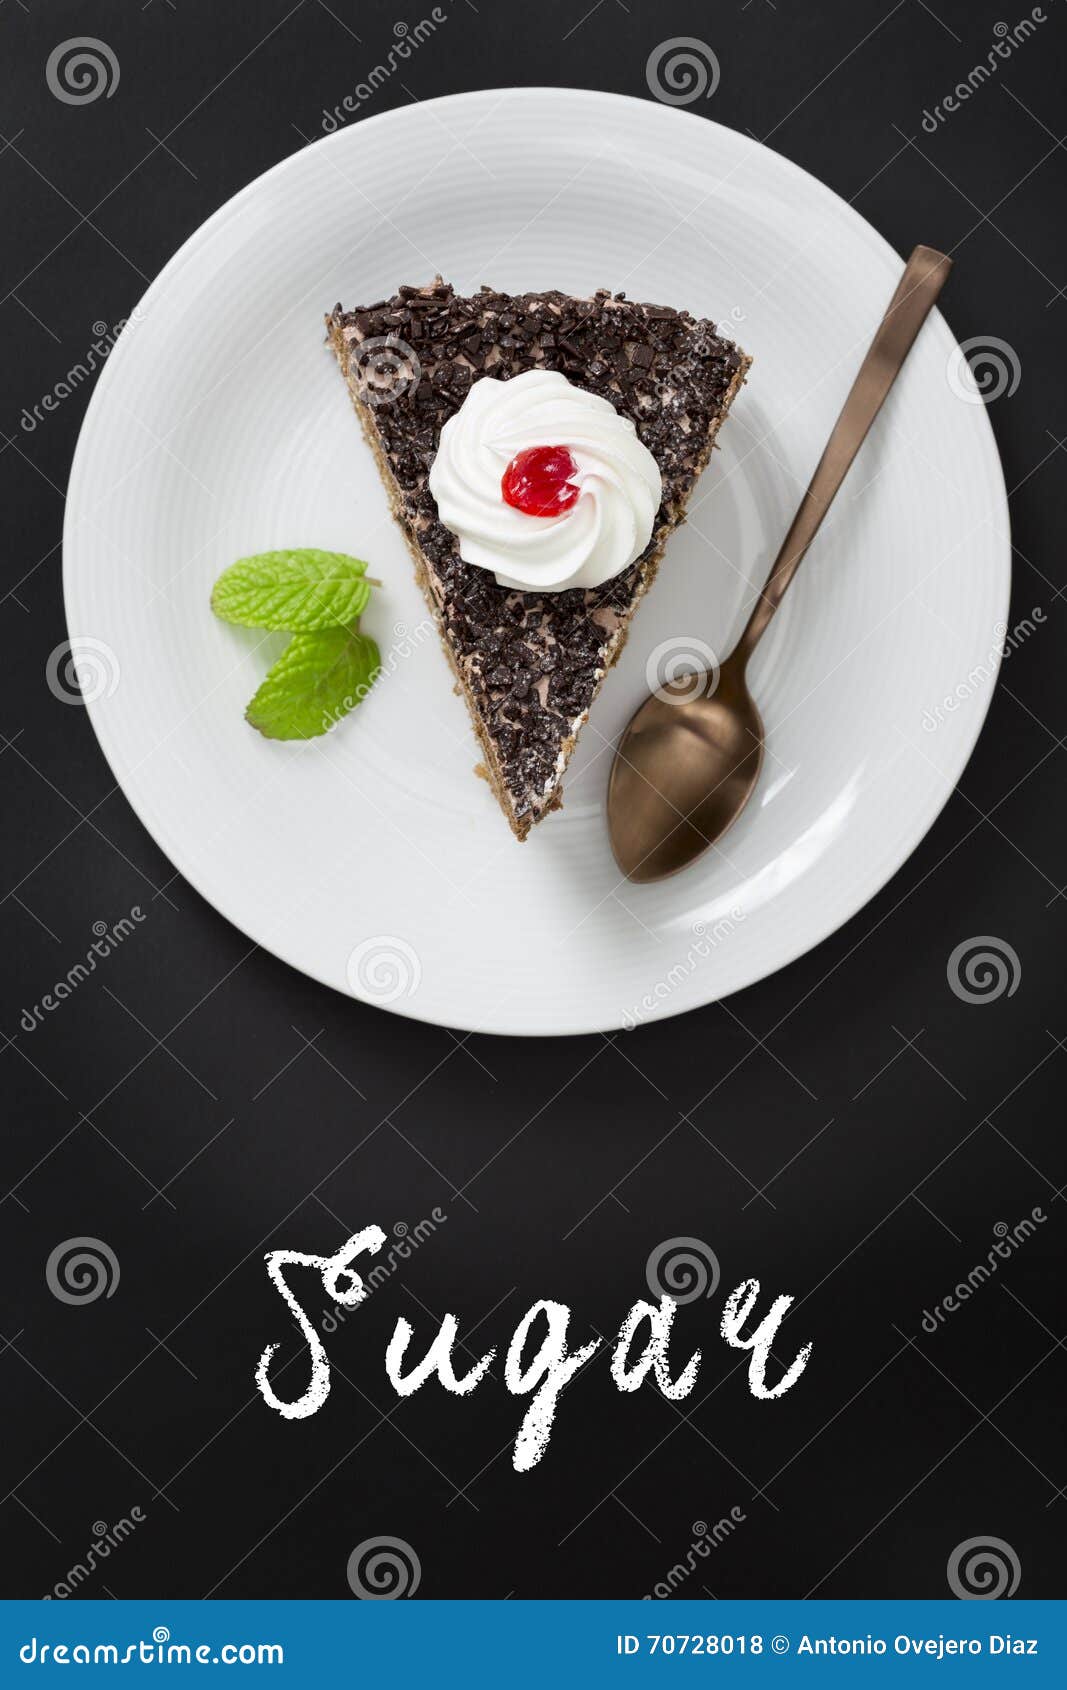 与手字法文本书面黑板的巧克力蛋糕 Suga. 与手在黑板写的字法文本的巧克力蛋糕 糖 顶上的视图